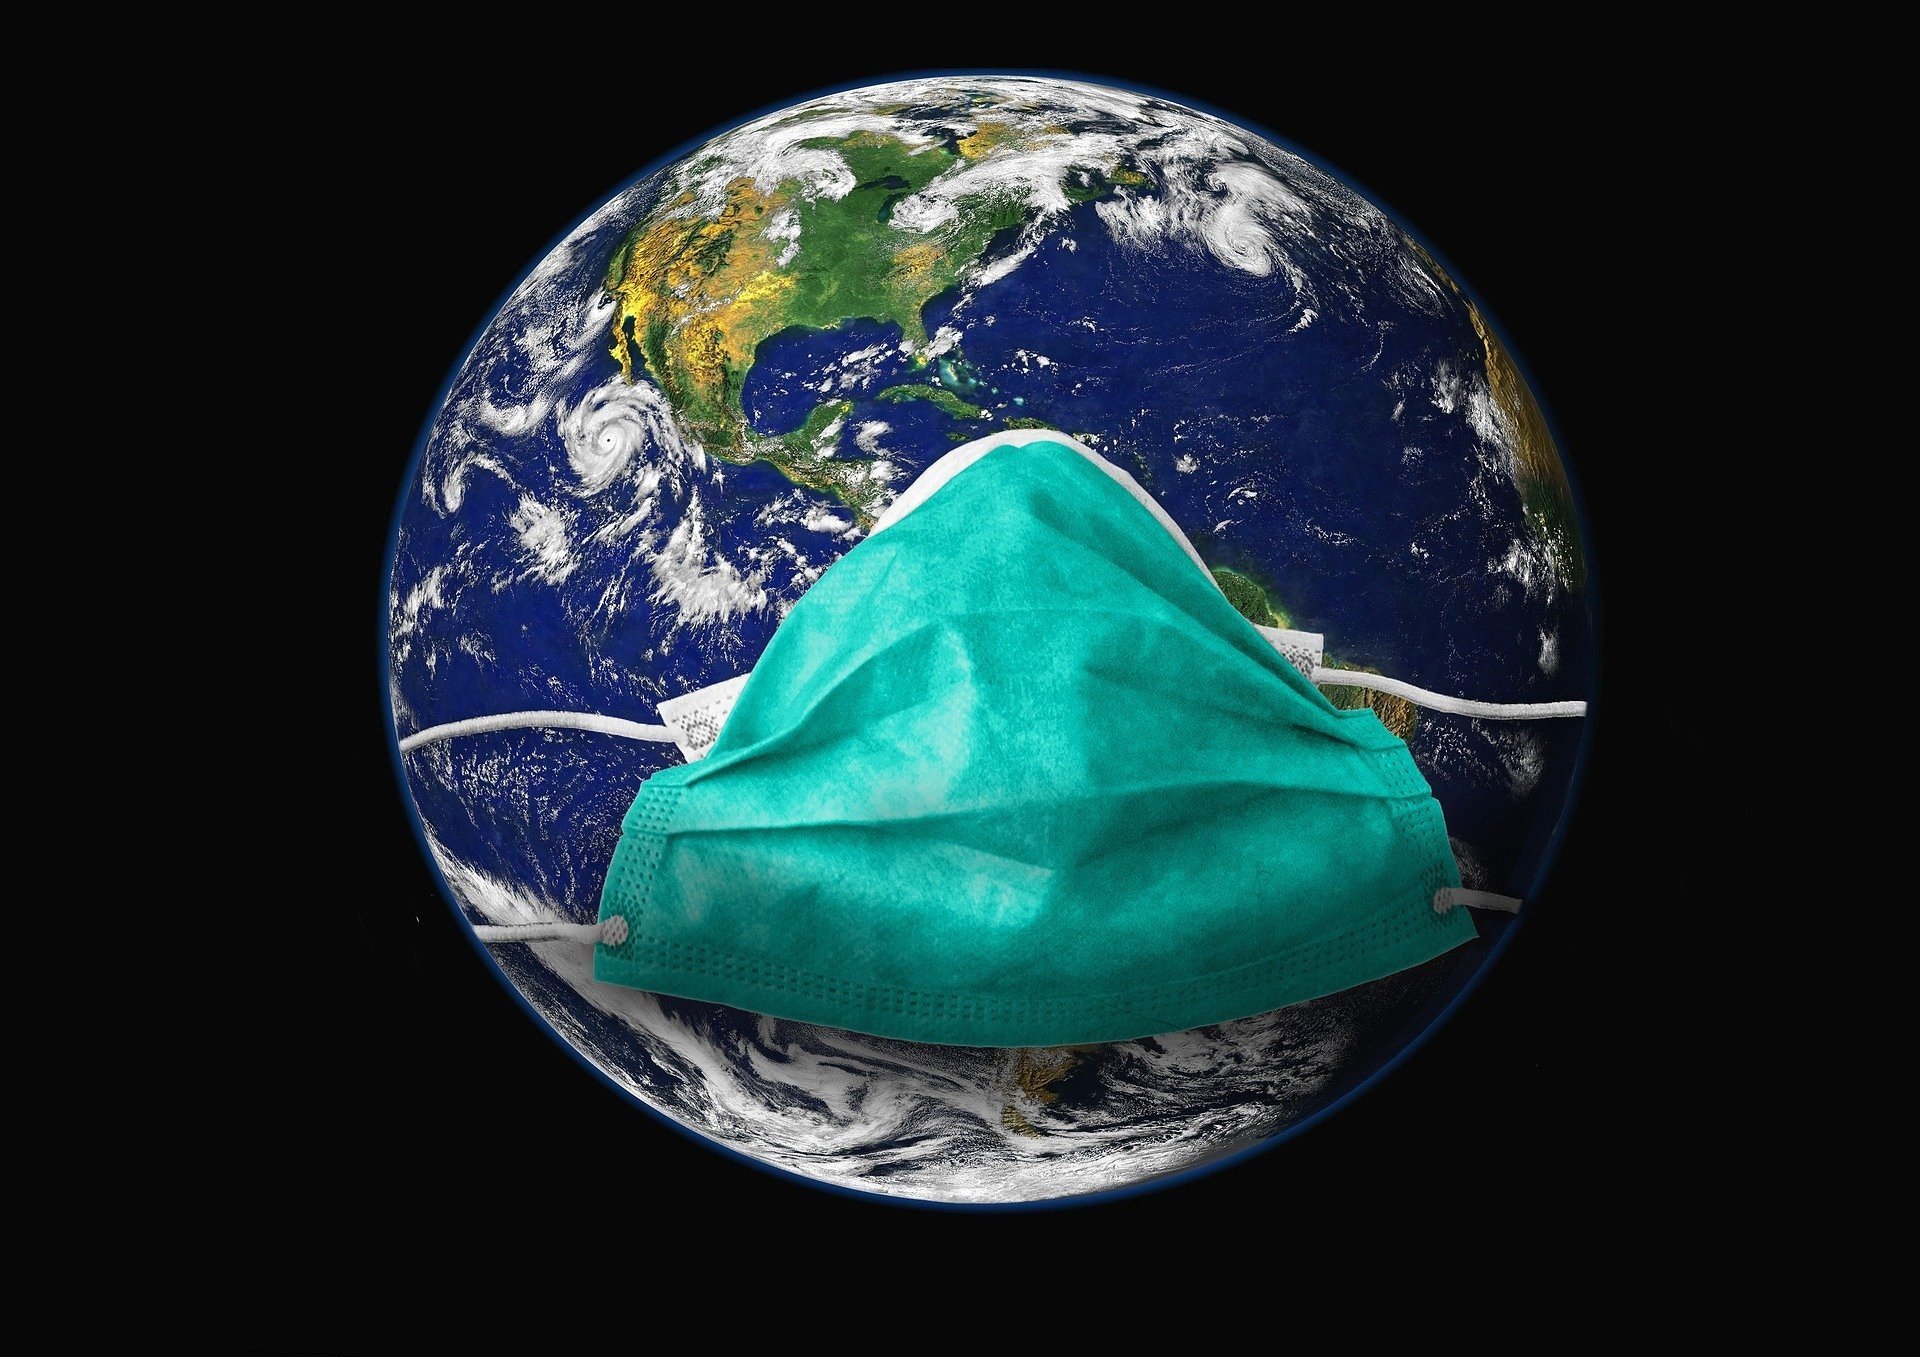 Астероид "в маске" летит к Земле (фото)